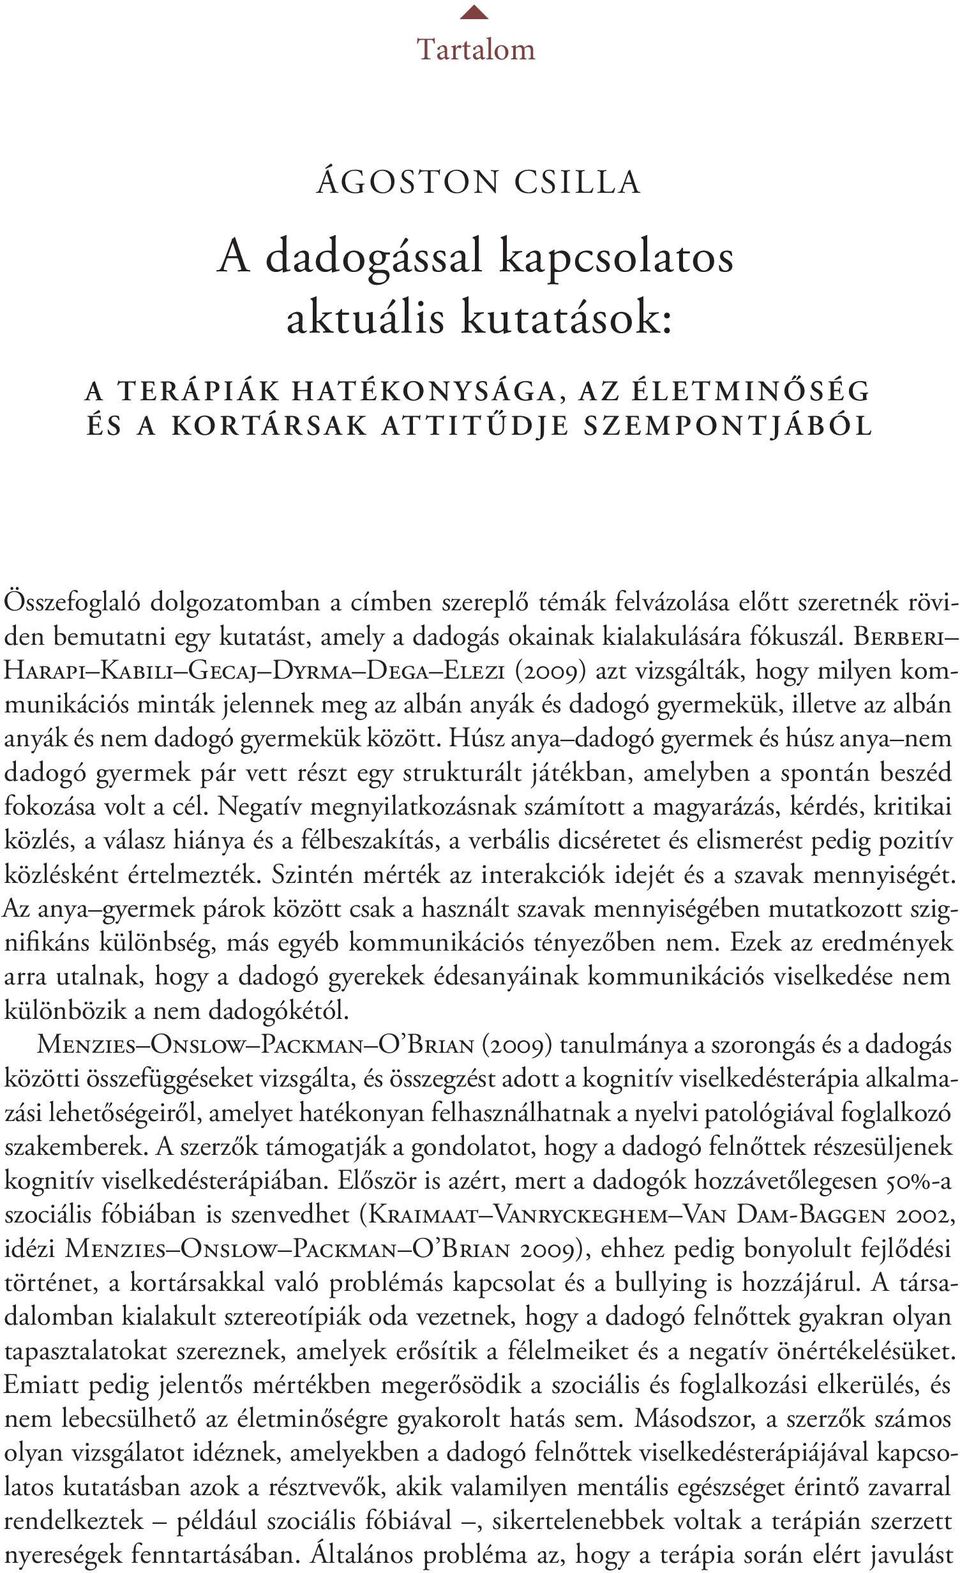 Berberi Harapi Kabili Gecaj Dyrma Dega Elezi (2009) azt vizsgálták, hogy milyen kommunikációs minták jelennek meg az albán anyák és dadogó gyermekük, illetve az albán anyák és nem dadogó gyermekük